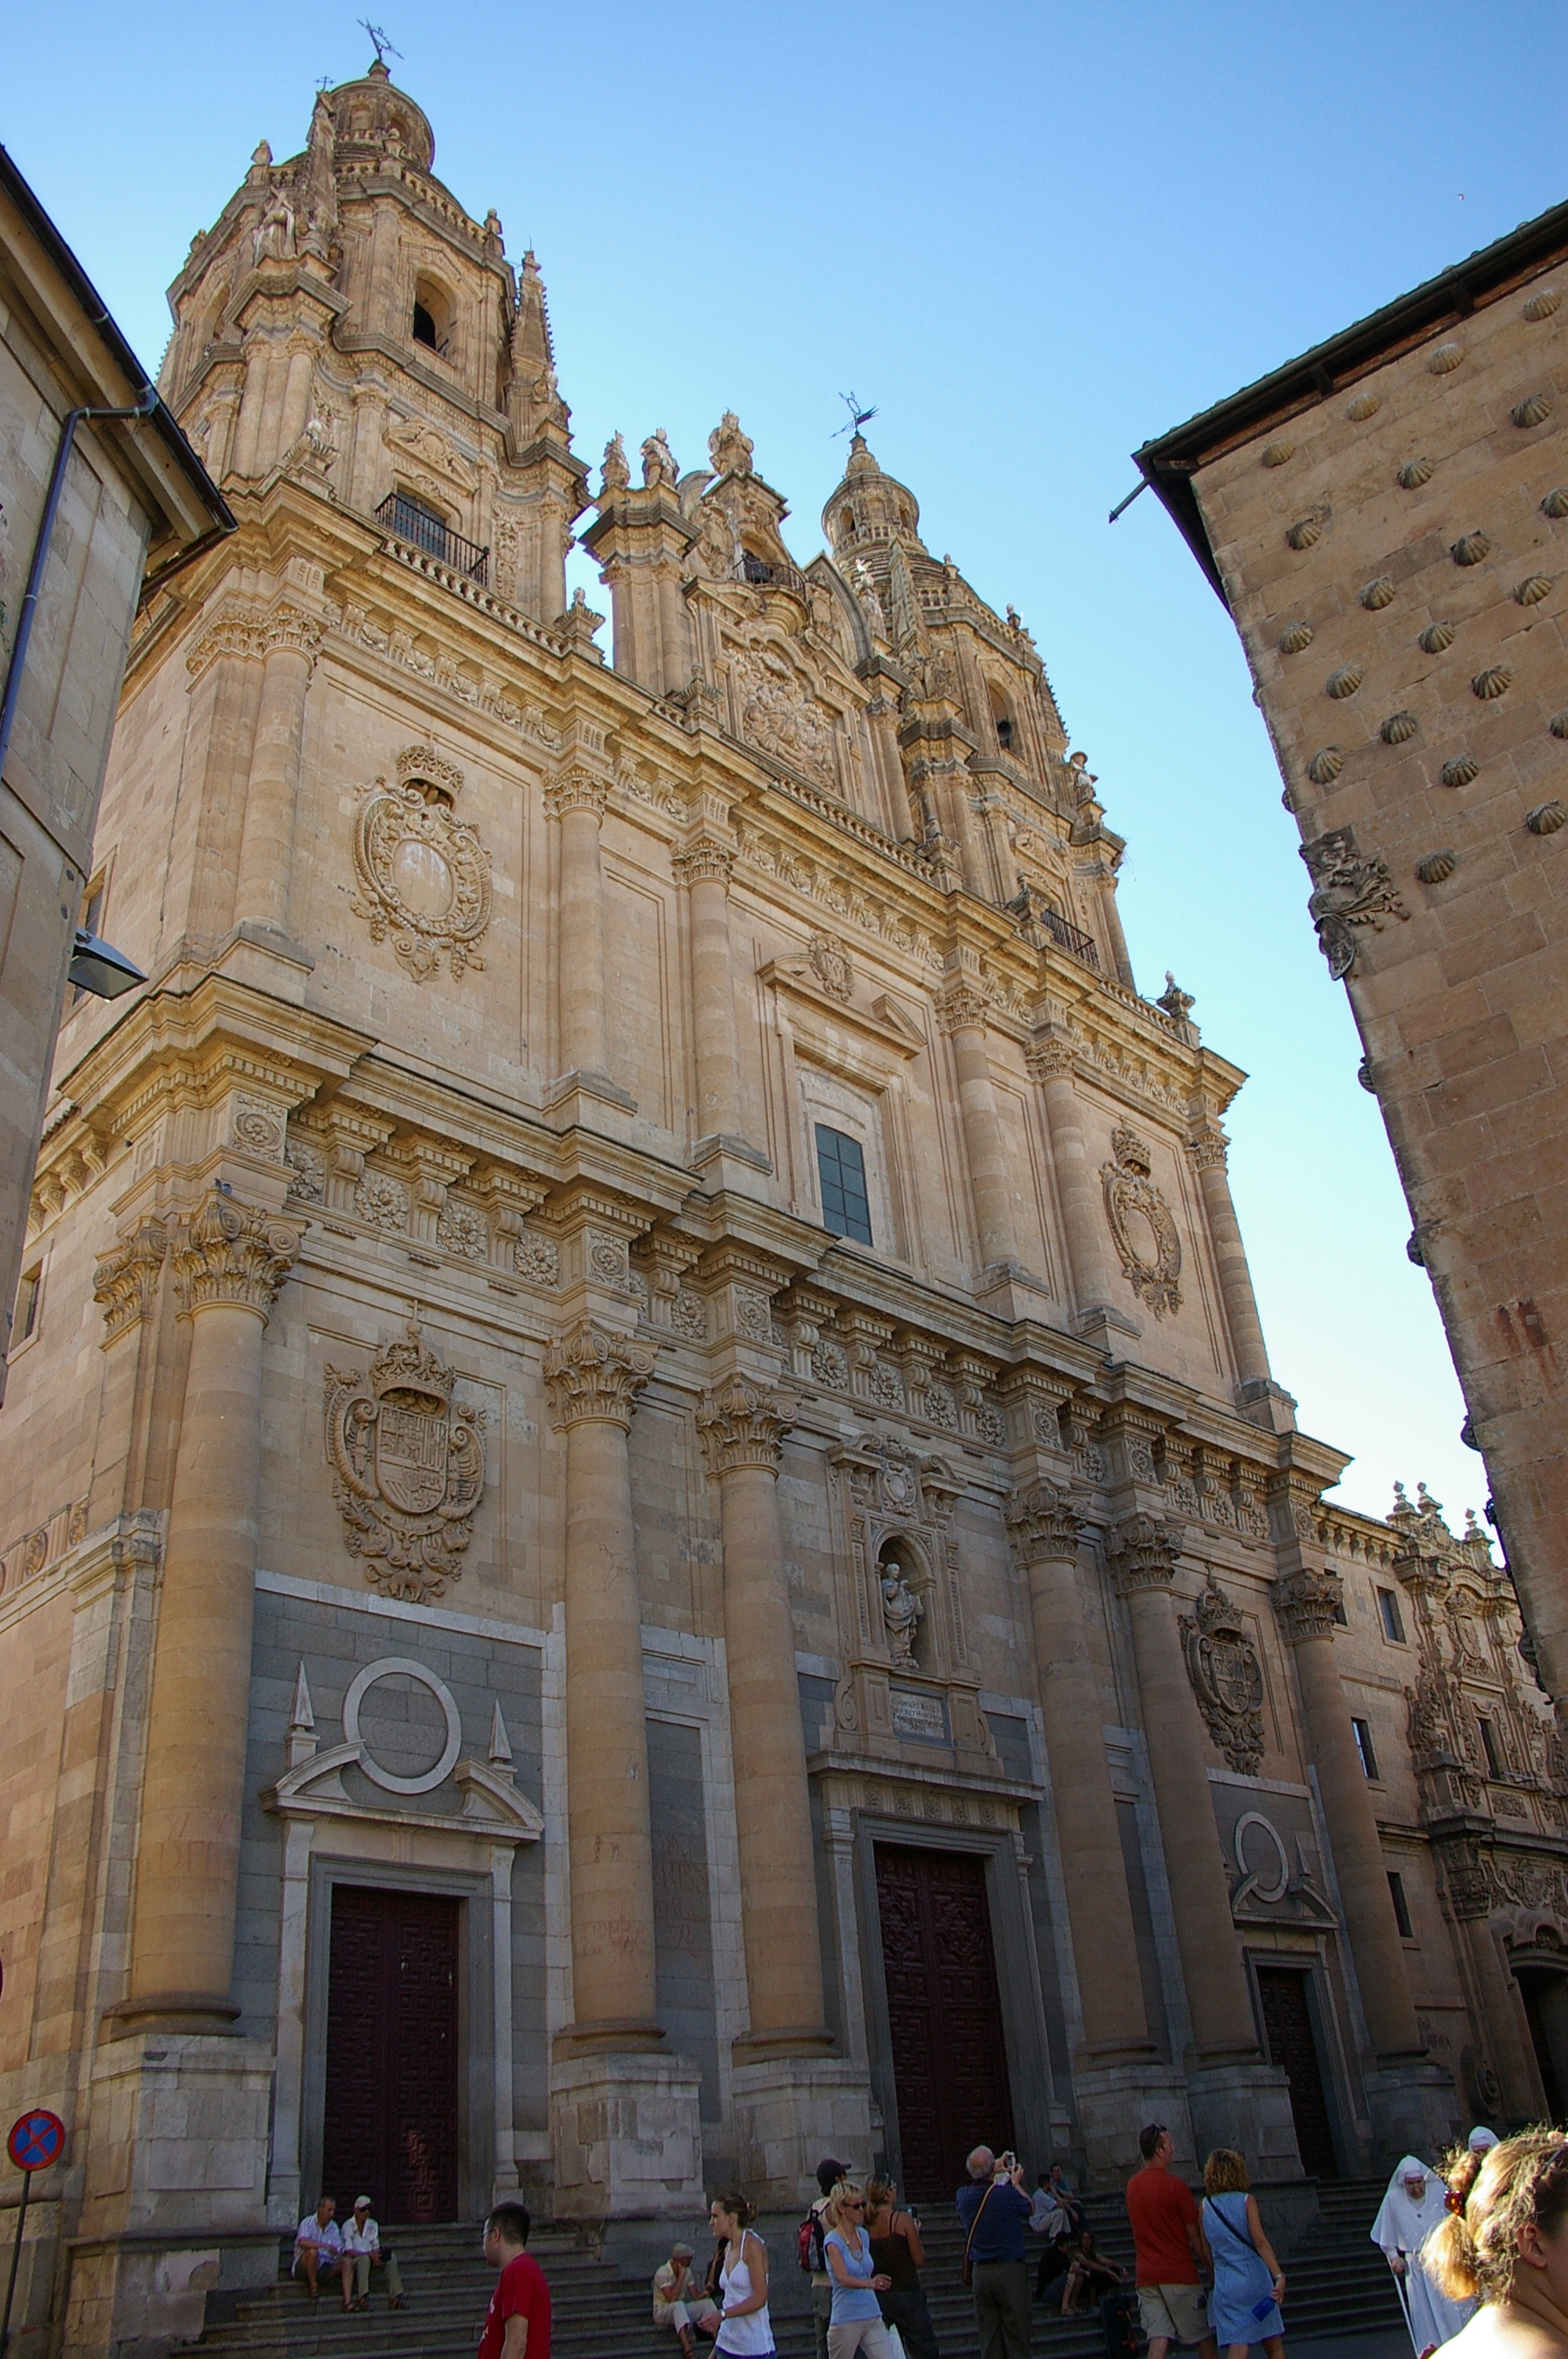 Facade of the Pontifical University of Salamanca